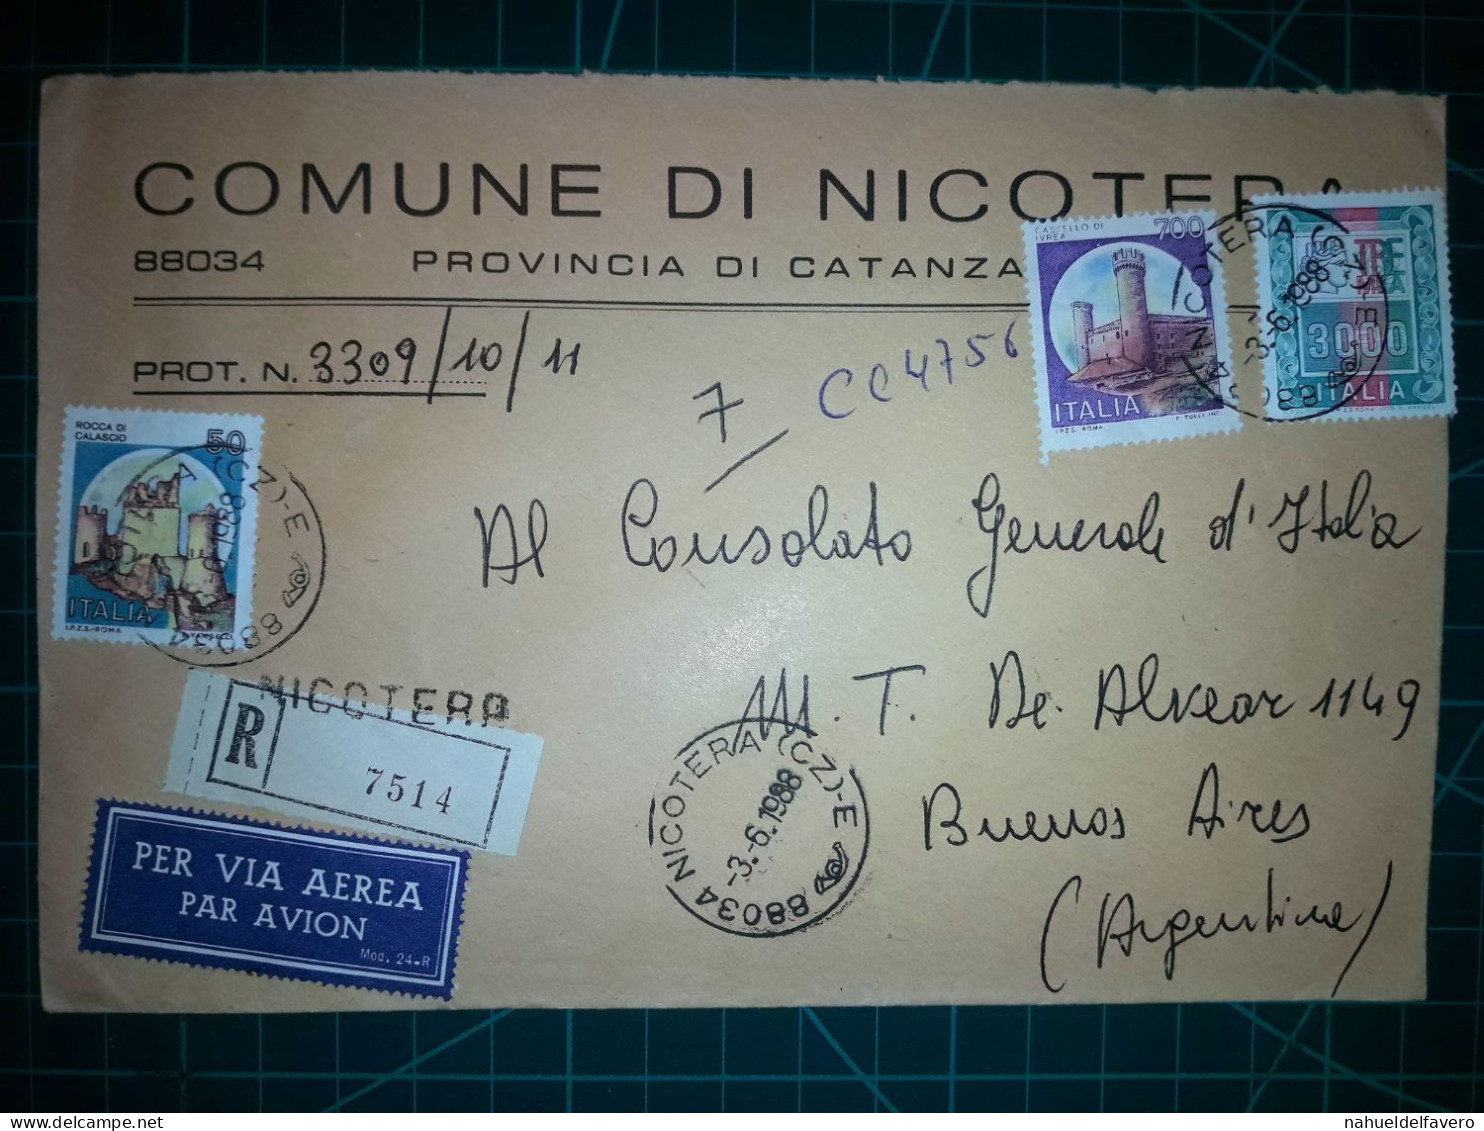 ITALIE, Enveloppe Communale Circulée à Buenos Aires, Argentine Avec Divers Timbres-poste (châteaux Et Autres). Commune: - 1981-90: Gebraucht